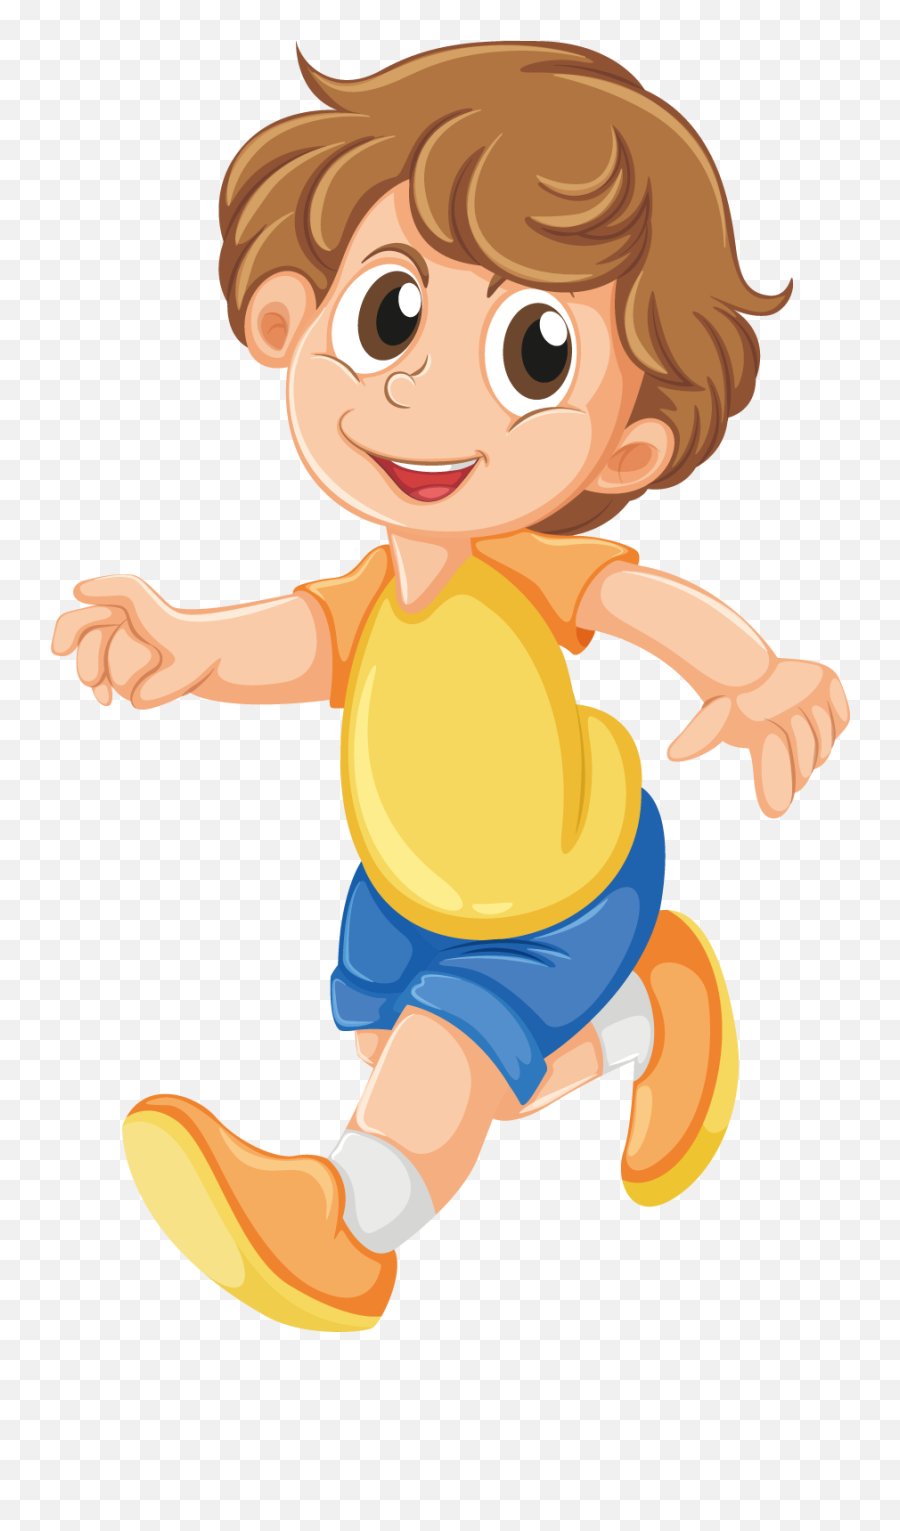 Clipart Walking Baby Boy Clipart Walking Baby Boy - Child Walking Clipart Emoji,Baby Boy Clipart